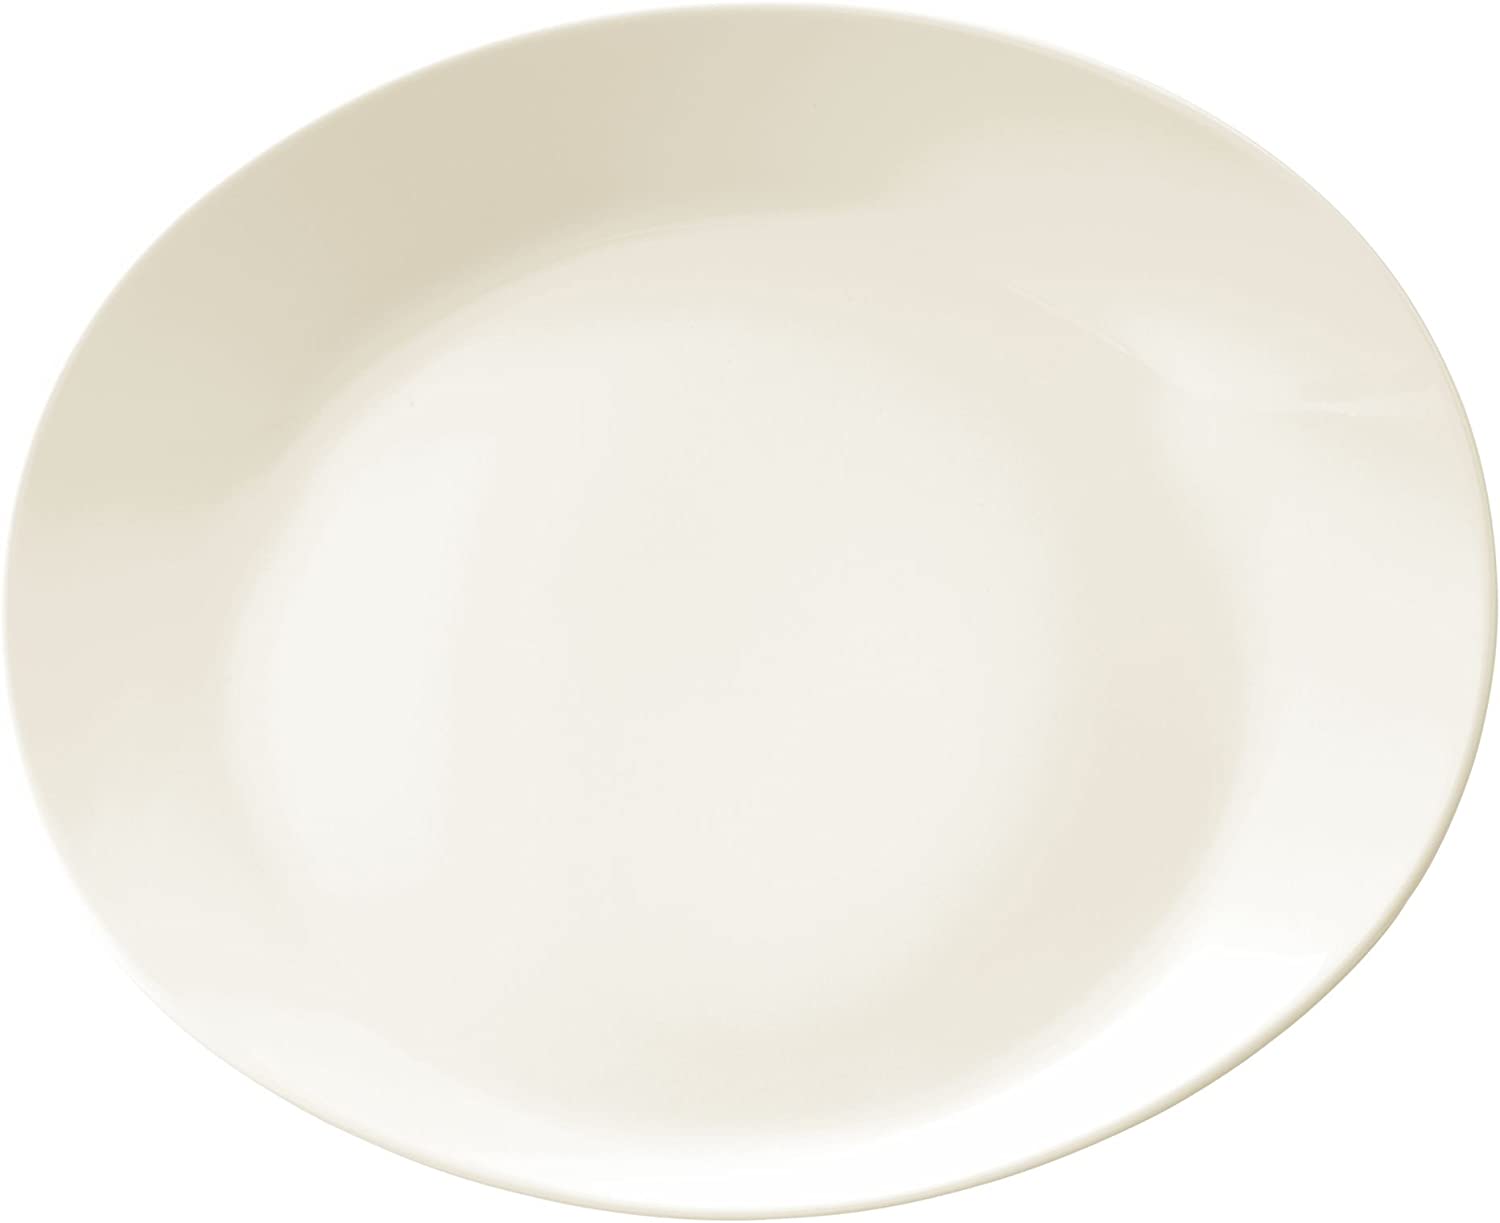 Gourmet Plate 34 cm Maxim 00003 by Seltmann Weiden